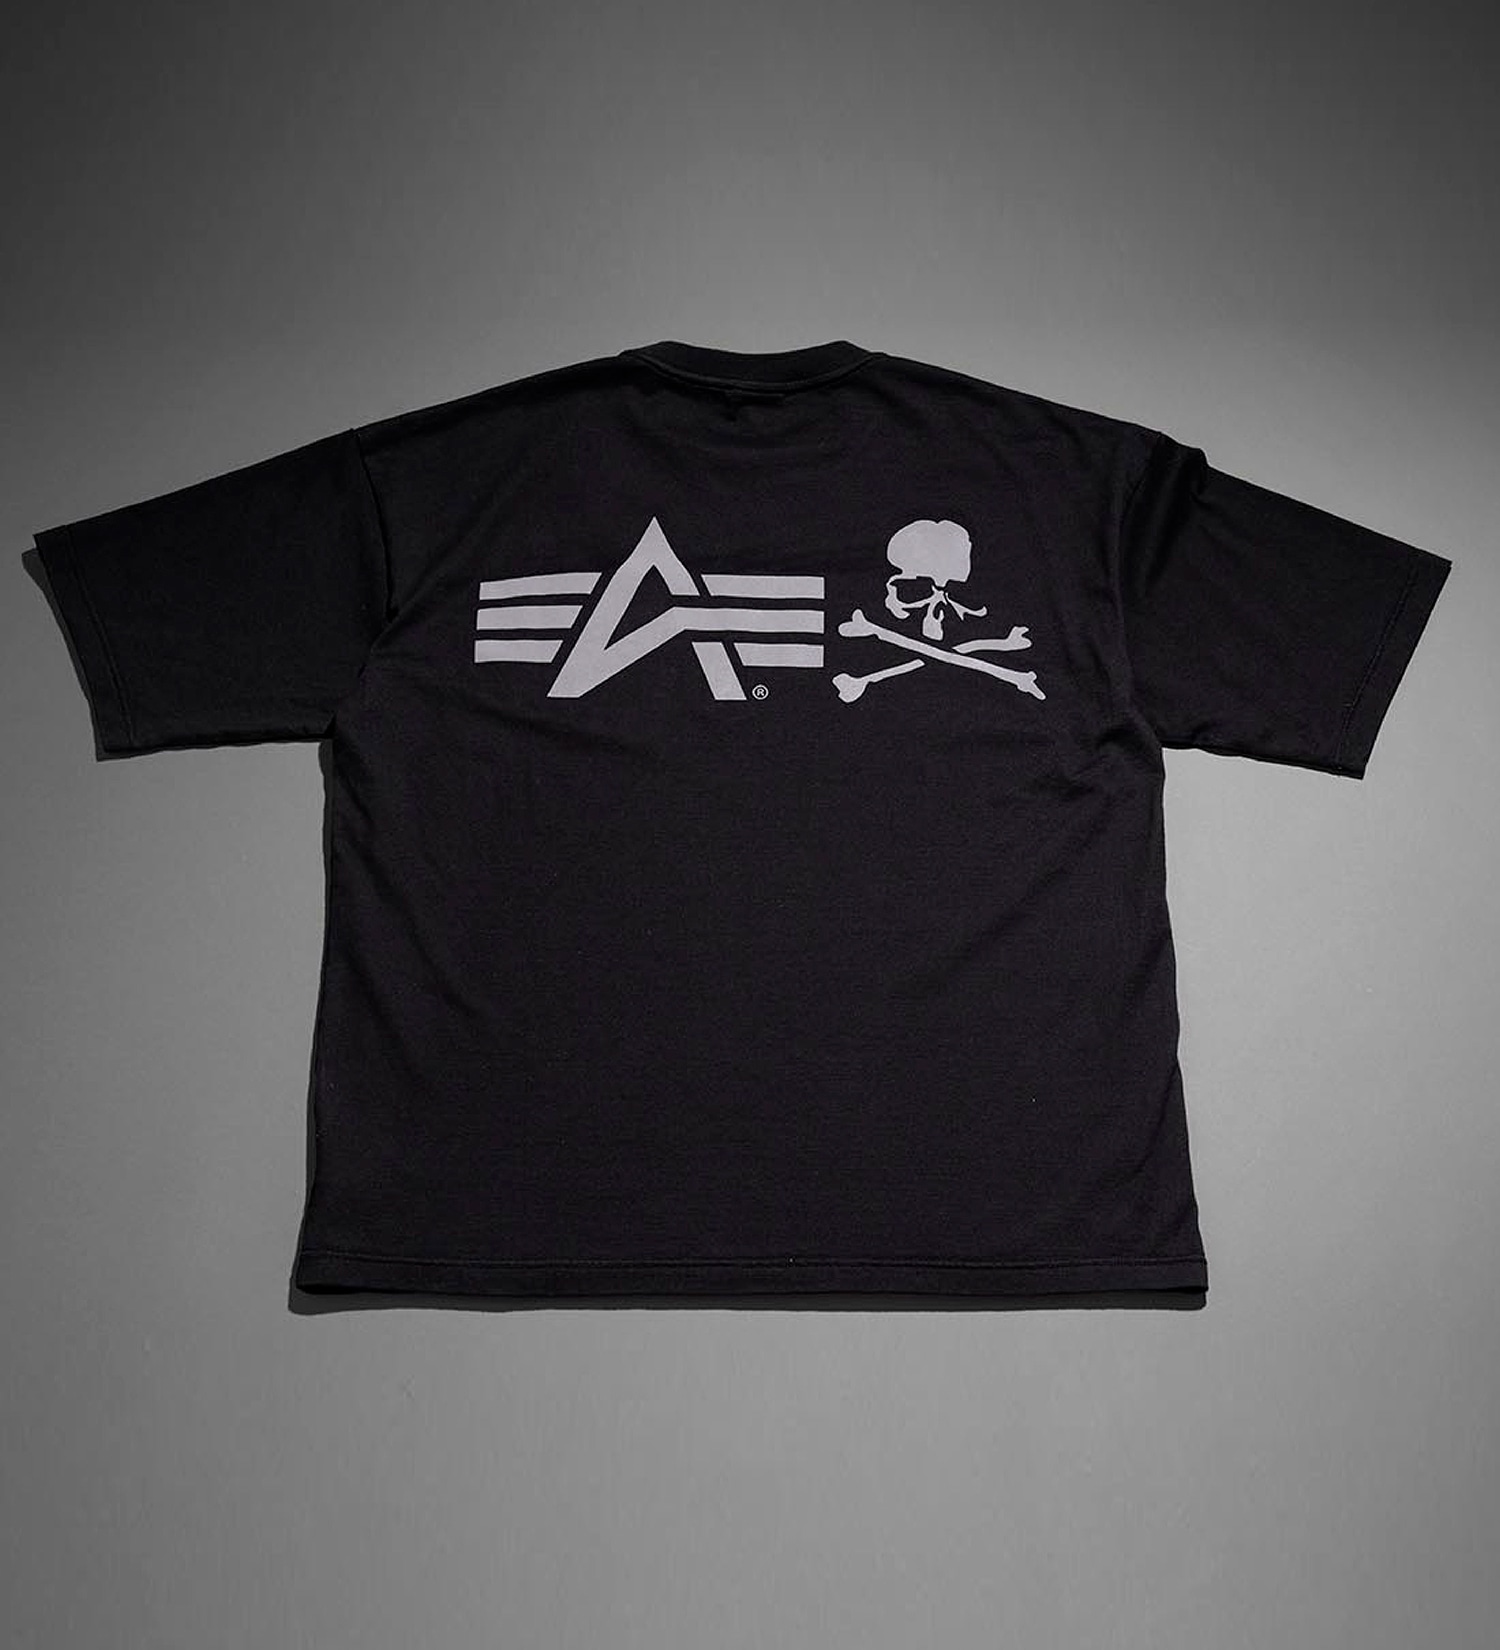 ALPHA(アルファ)の【MASTERMIND x ALPHA】ユーティリティーポケット半袖Tシャツ|トップス/Tシャツ/カットソー/メンズ|ブラック